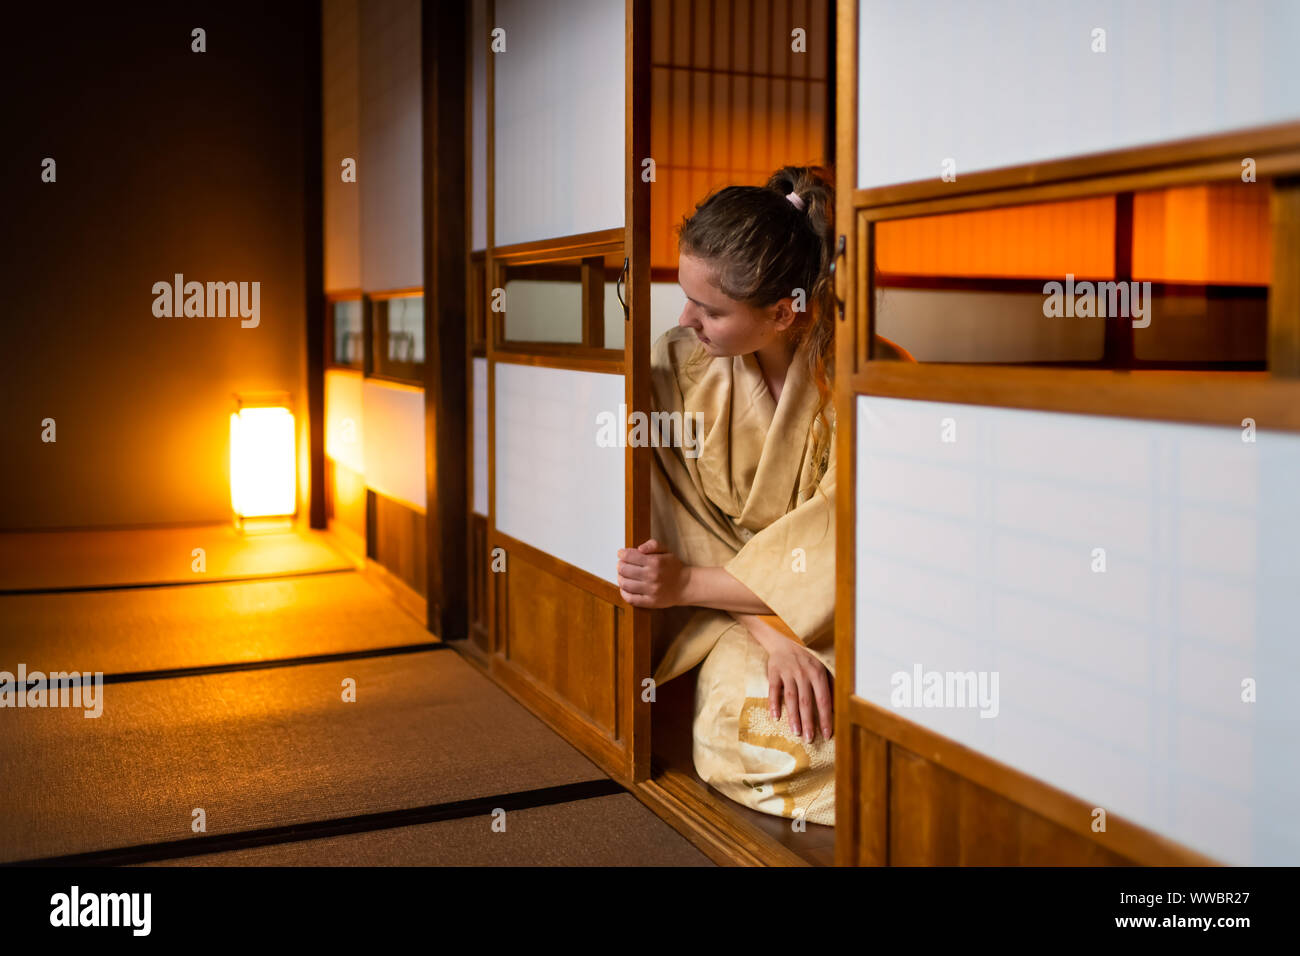 Die traditionellen japanischen Ryokan Zimmer mit Gaijin kaukasische Frau im Kimono, Tabi Socken Eröffnung shoji Schiebetüren Papier Türen sitzen auf Tatami Matten Boden Stockfoto